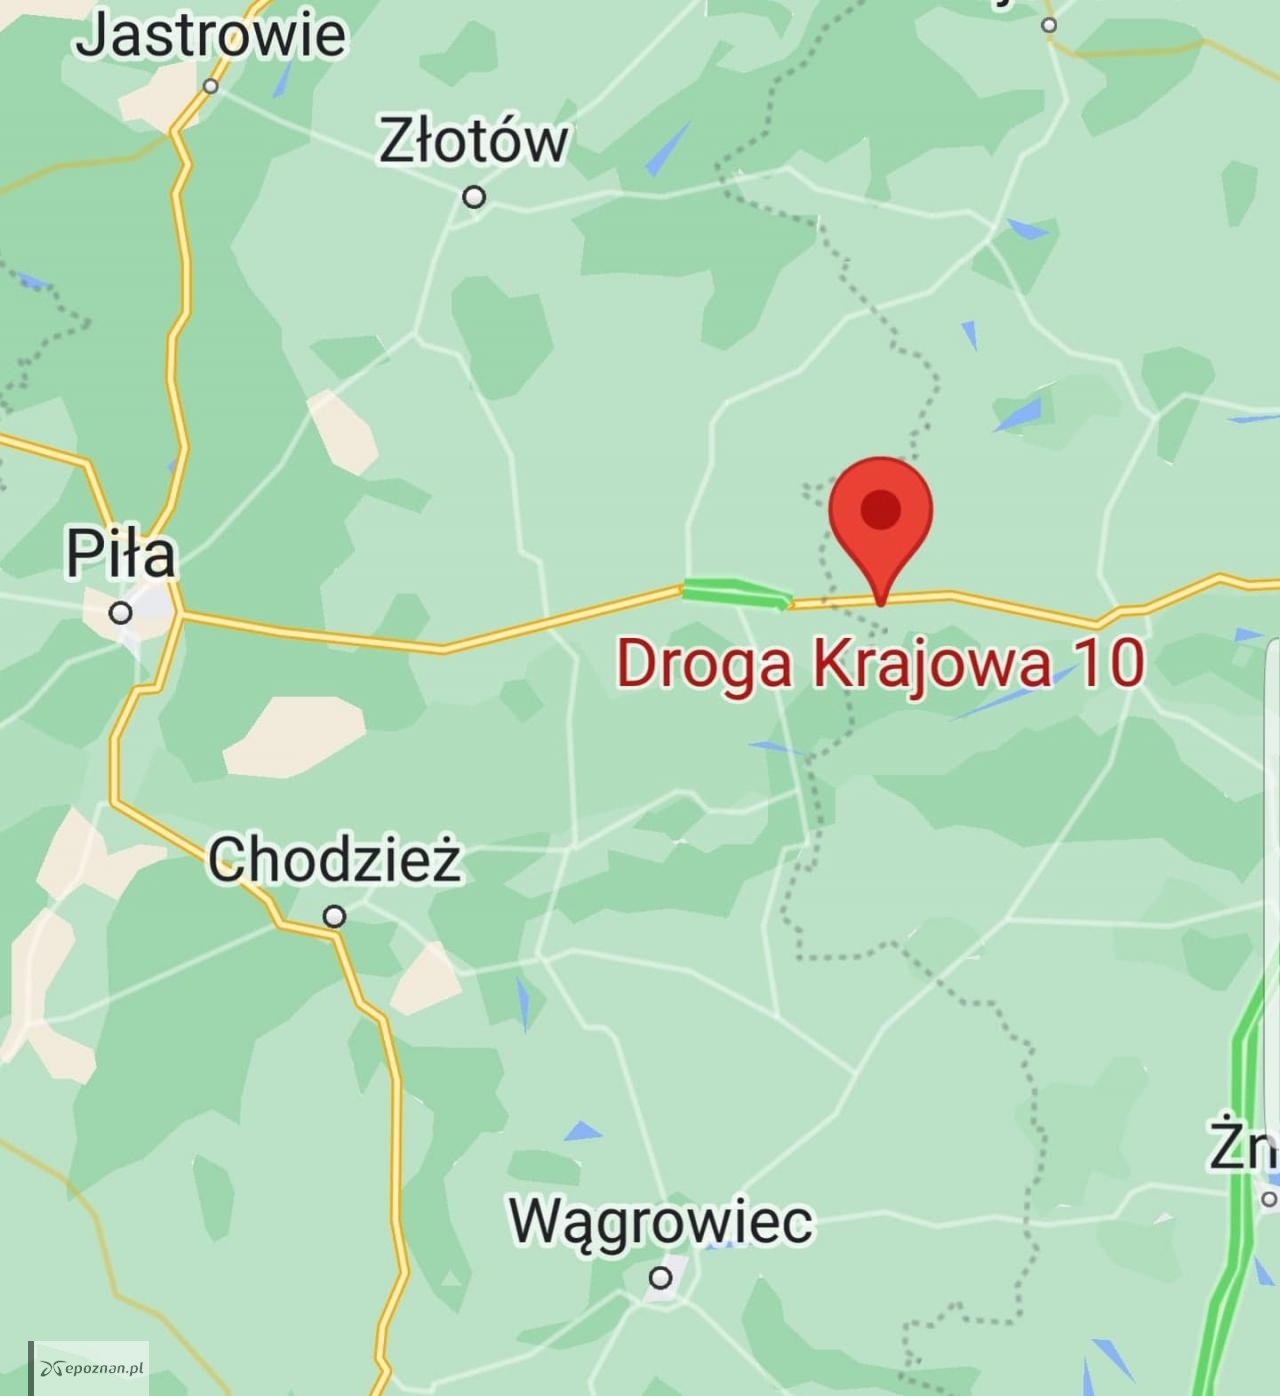 DK10 Piła-Wyrzysk. | fot. Google maps